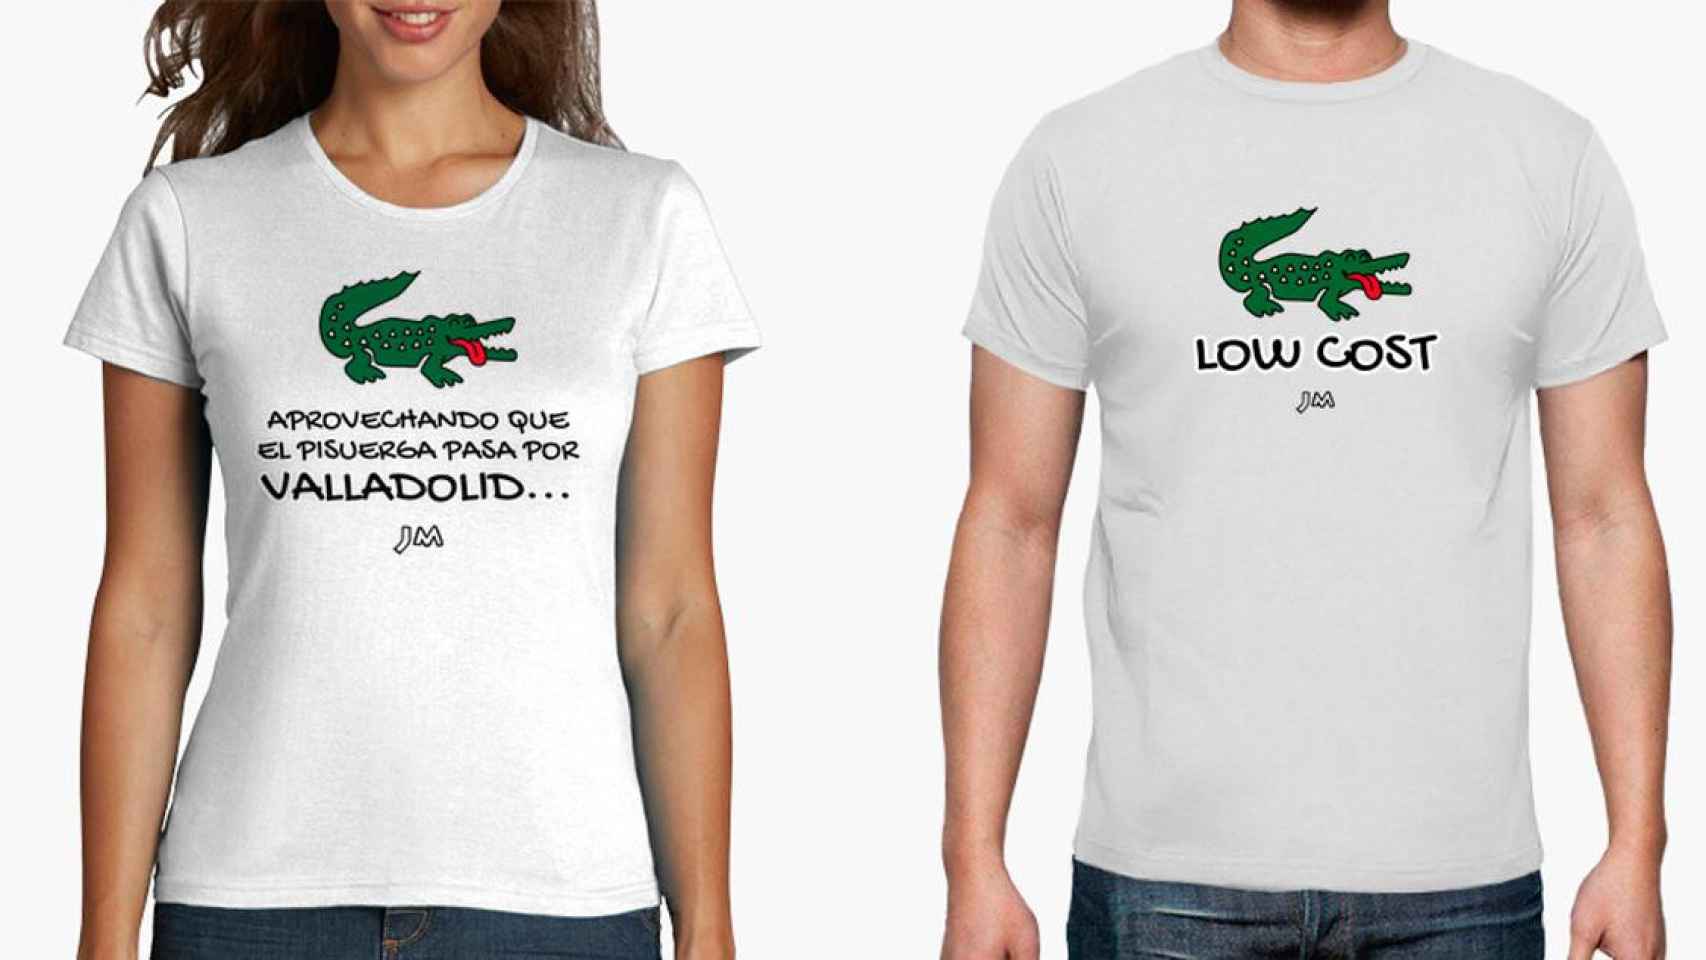 Camisetas de Jesu Medina inspiradas en el cocodrilo de Valladolid / JESU MEDINA